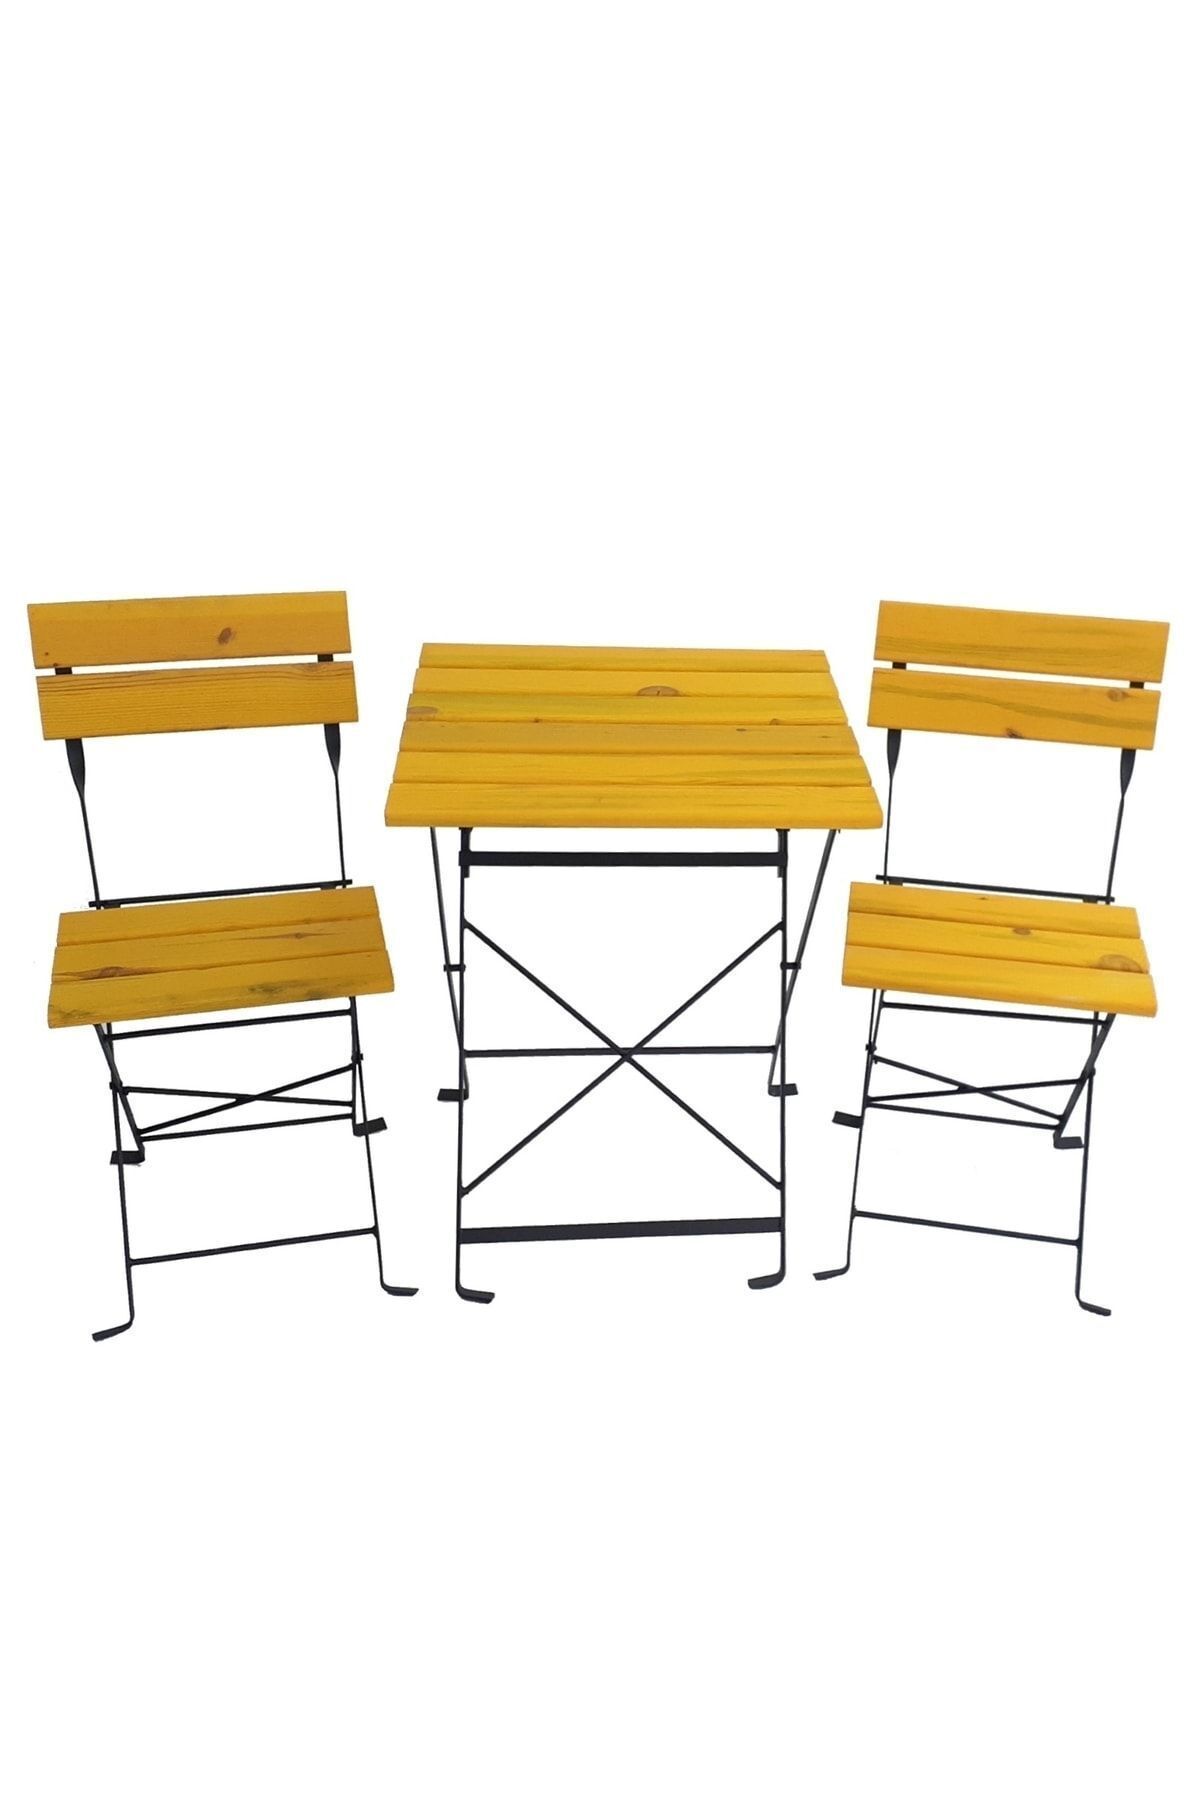 Zemes Design Sarı Katlanır Masa Sandalye Bahçe Balkon Mutfak Takımı 2 Sandalye 1 Masa Ikea Tipi Bistro Takım